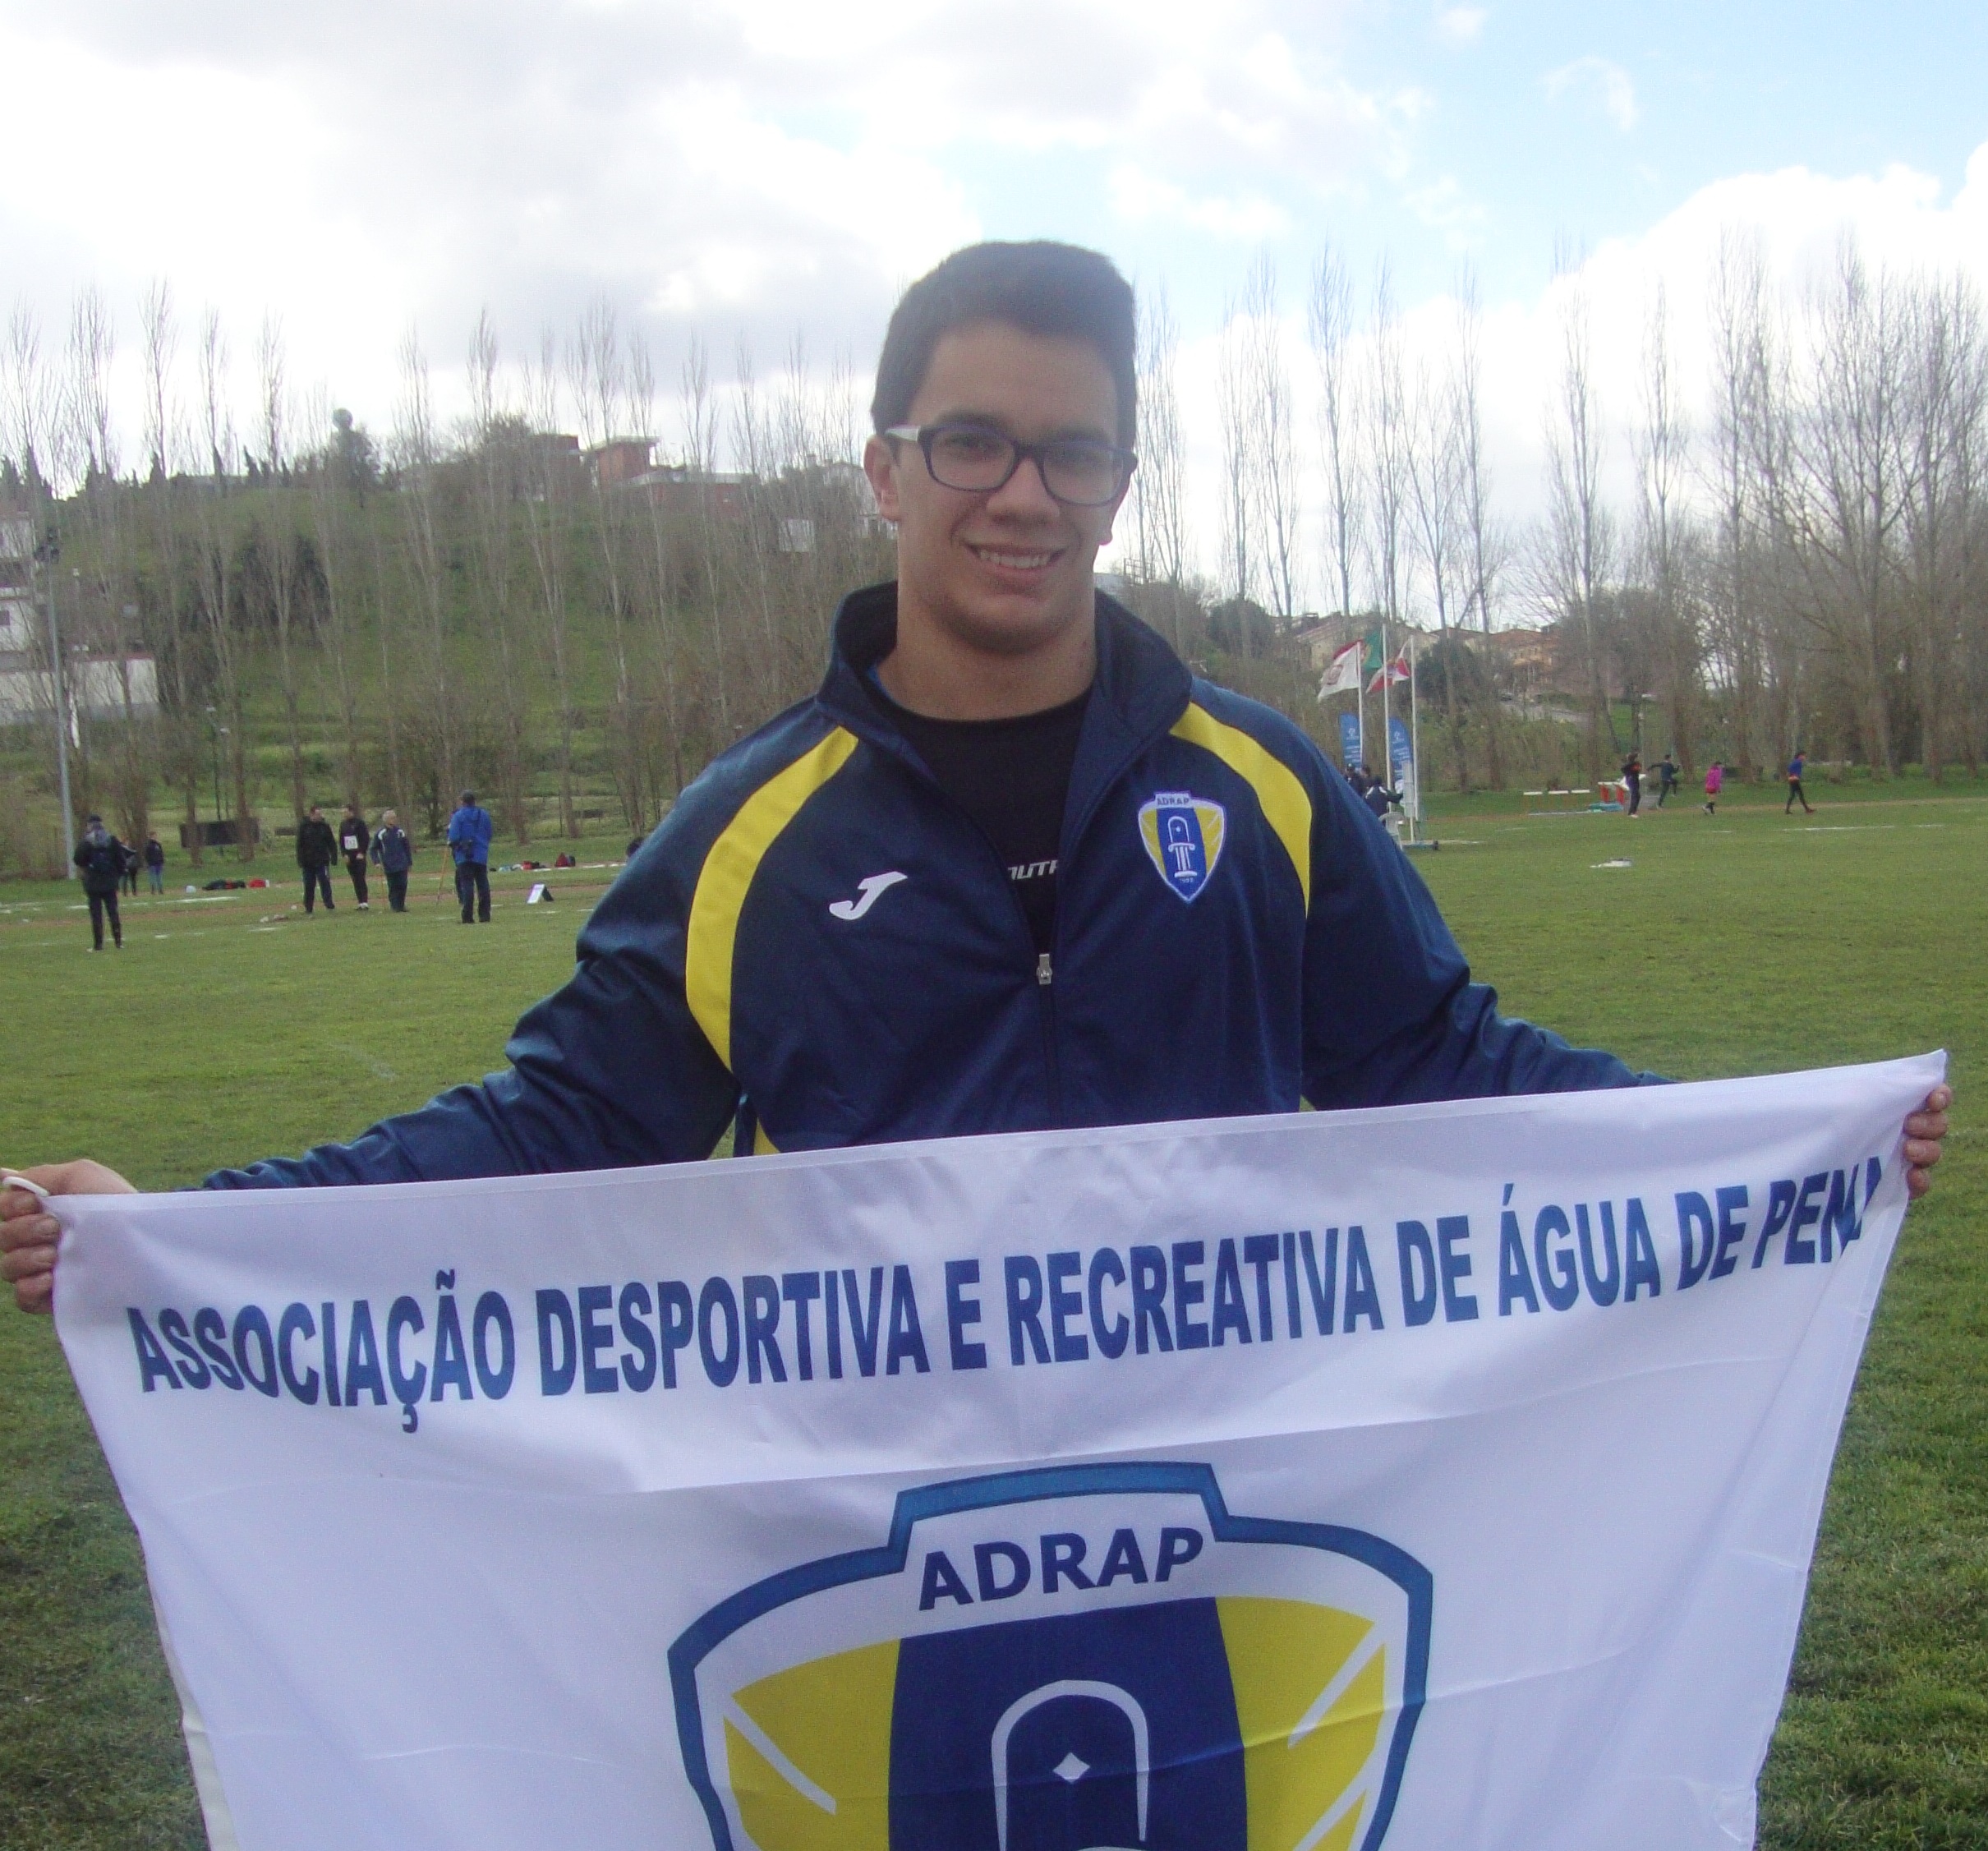 Congratulação - Leonardo Abreu (ADRAP)